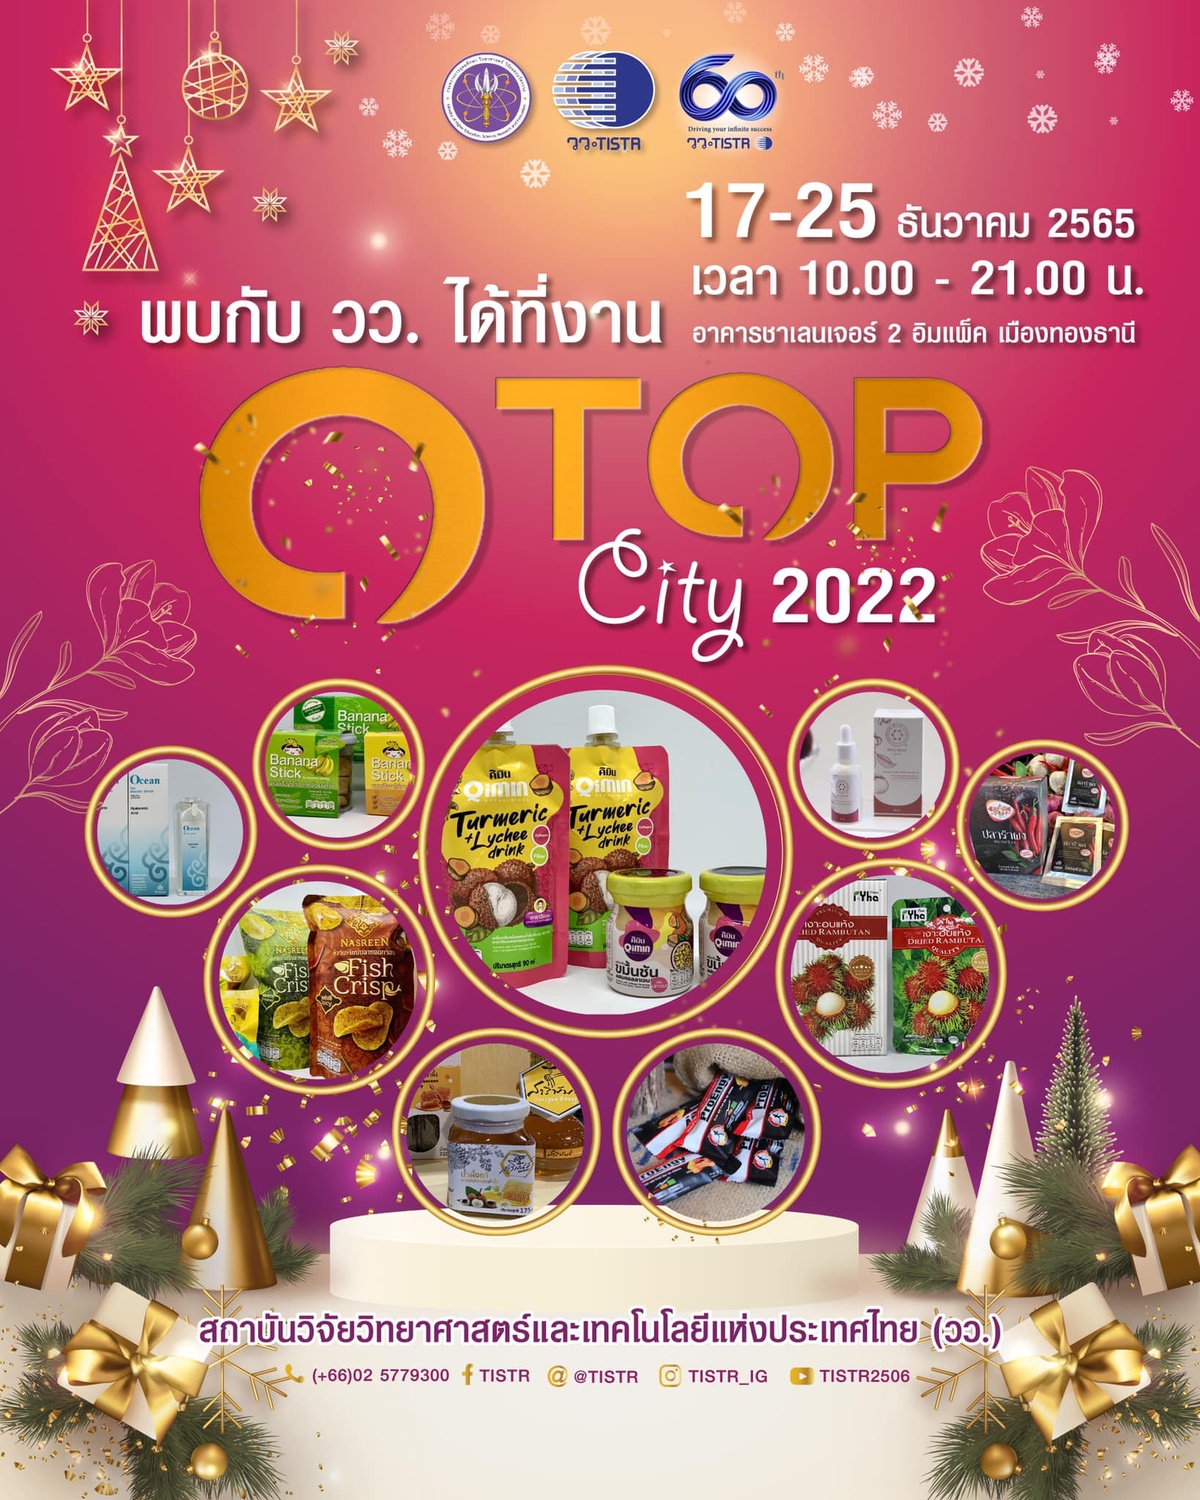 วว.โชว์/จำหน่ายผลงานพัฒนาสินค้า ผลิตภัณฑ์ ผู้ประกอบการไทยด้วย วทน. @ OTOP City 2022